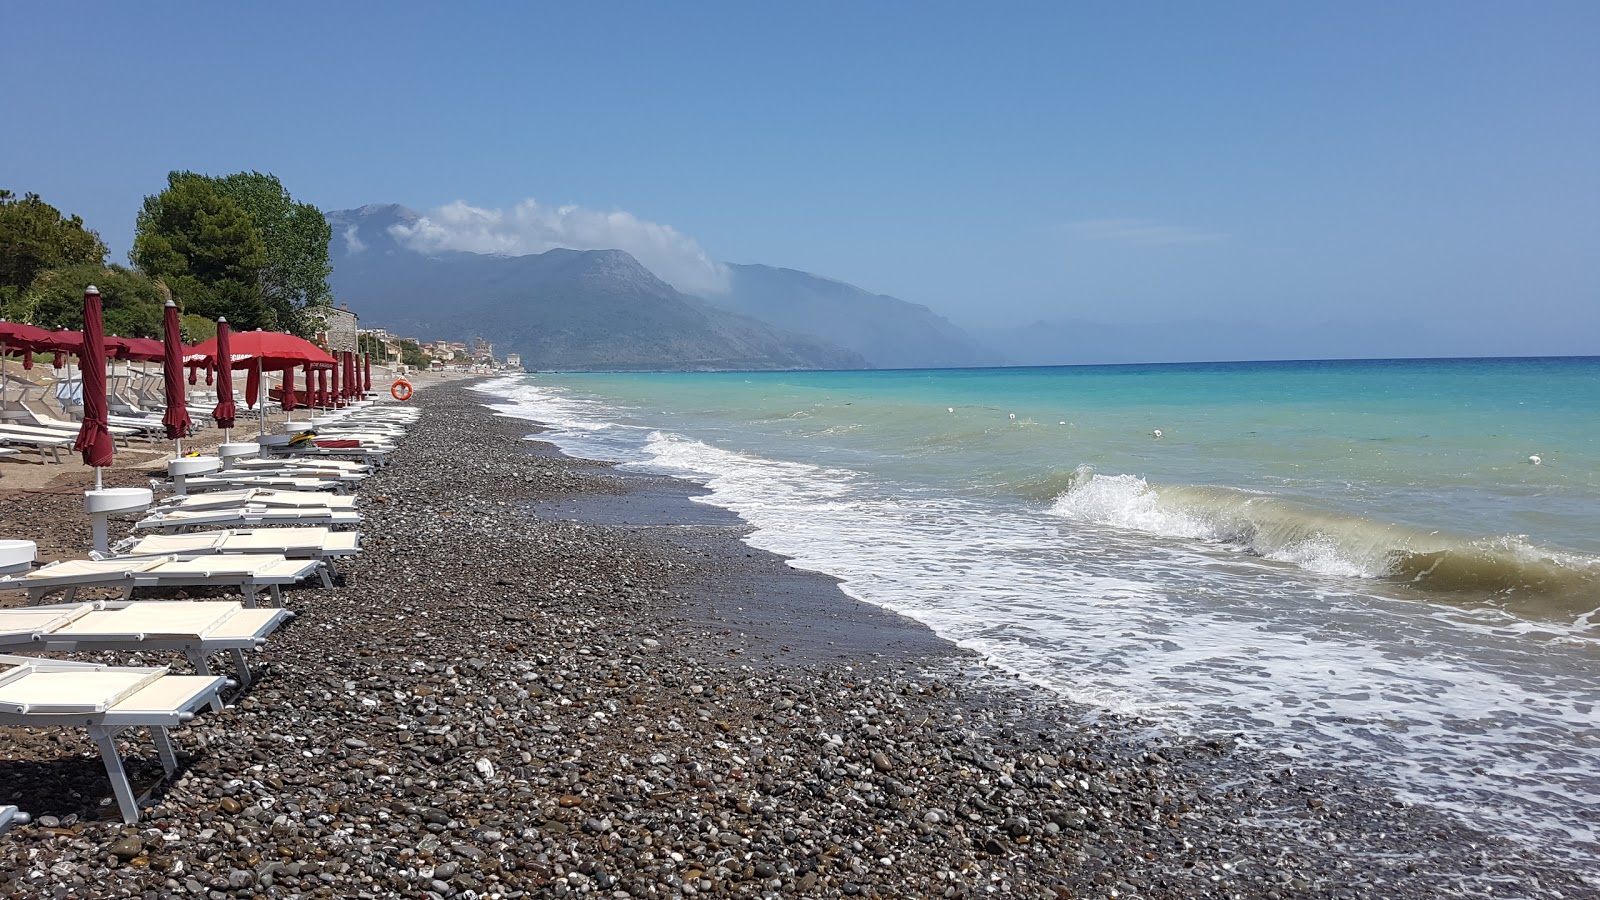 Villammare beach II'in fotoğrafı siyah kum ve çakıl yüzey ile